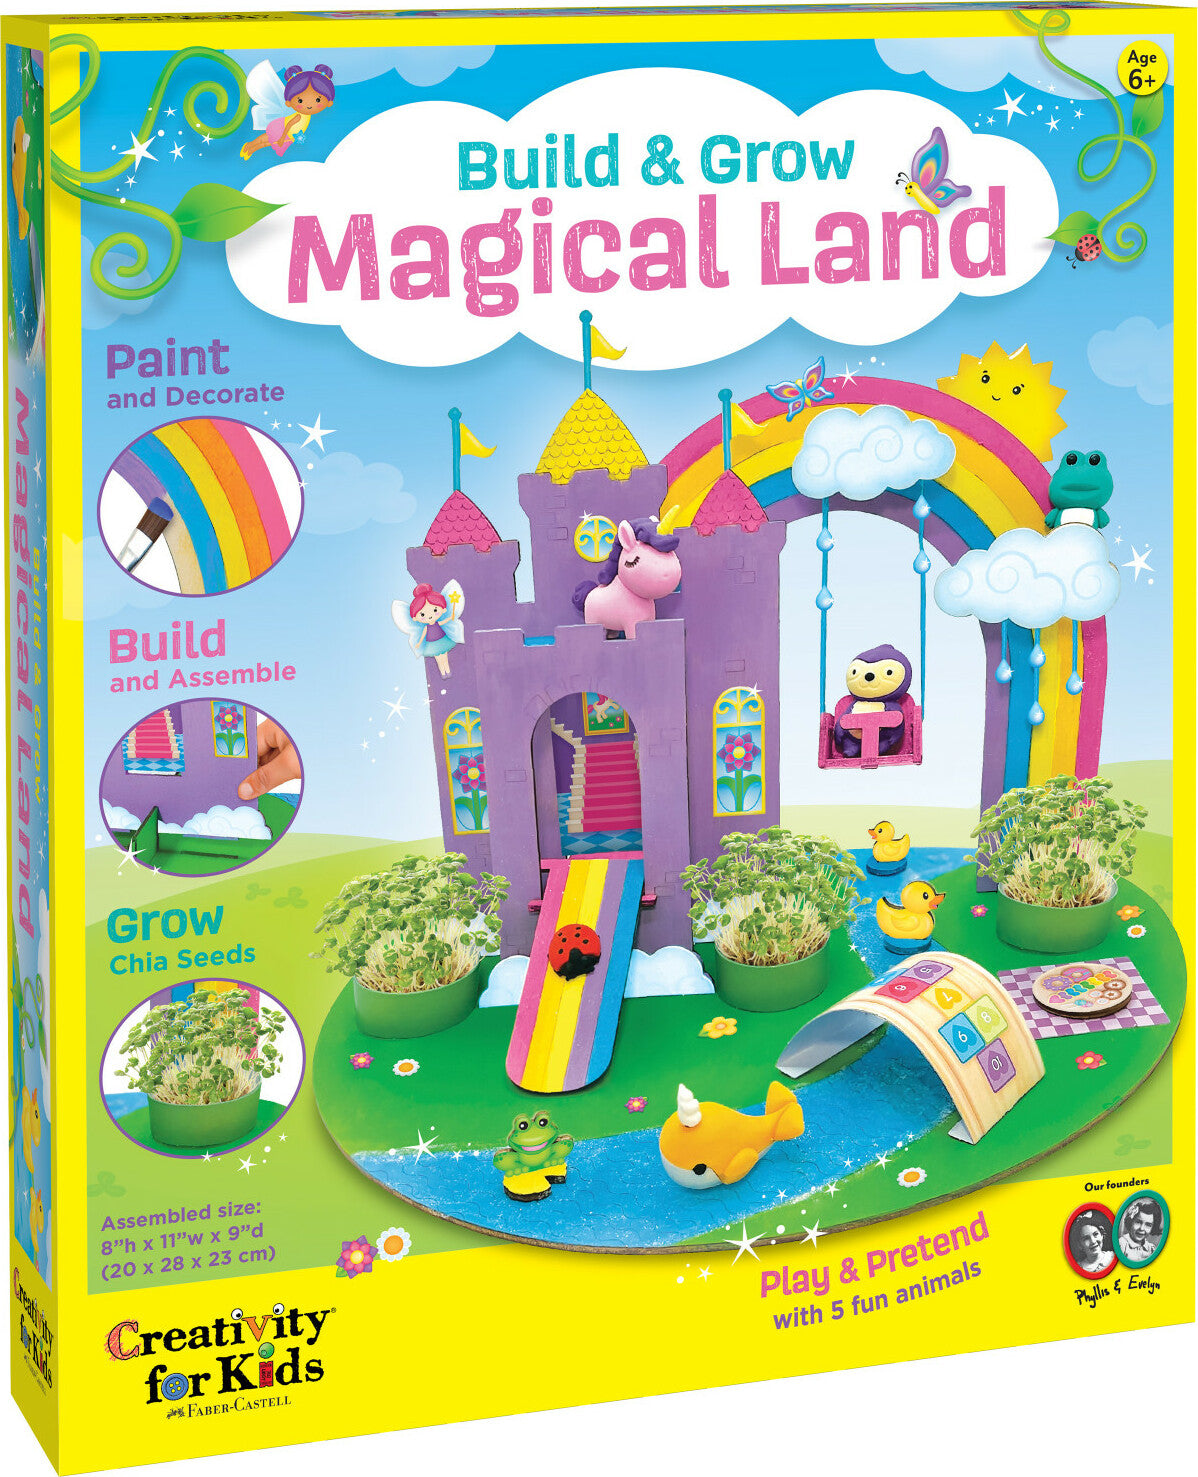 Build & Grow Magical Land